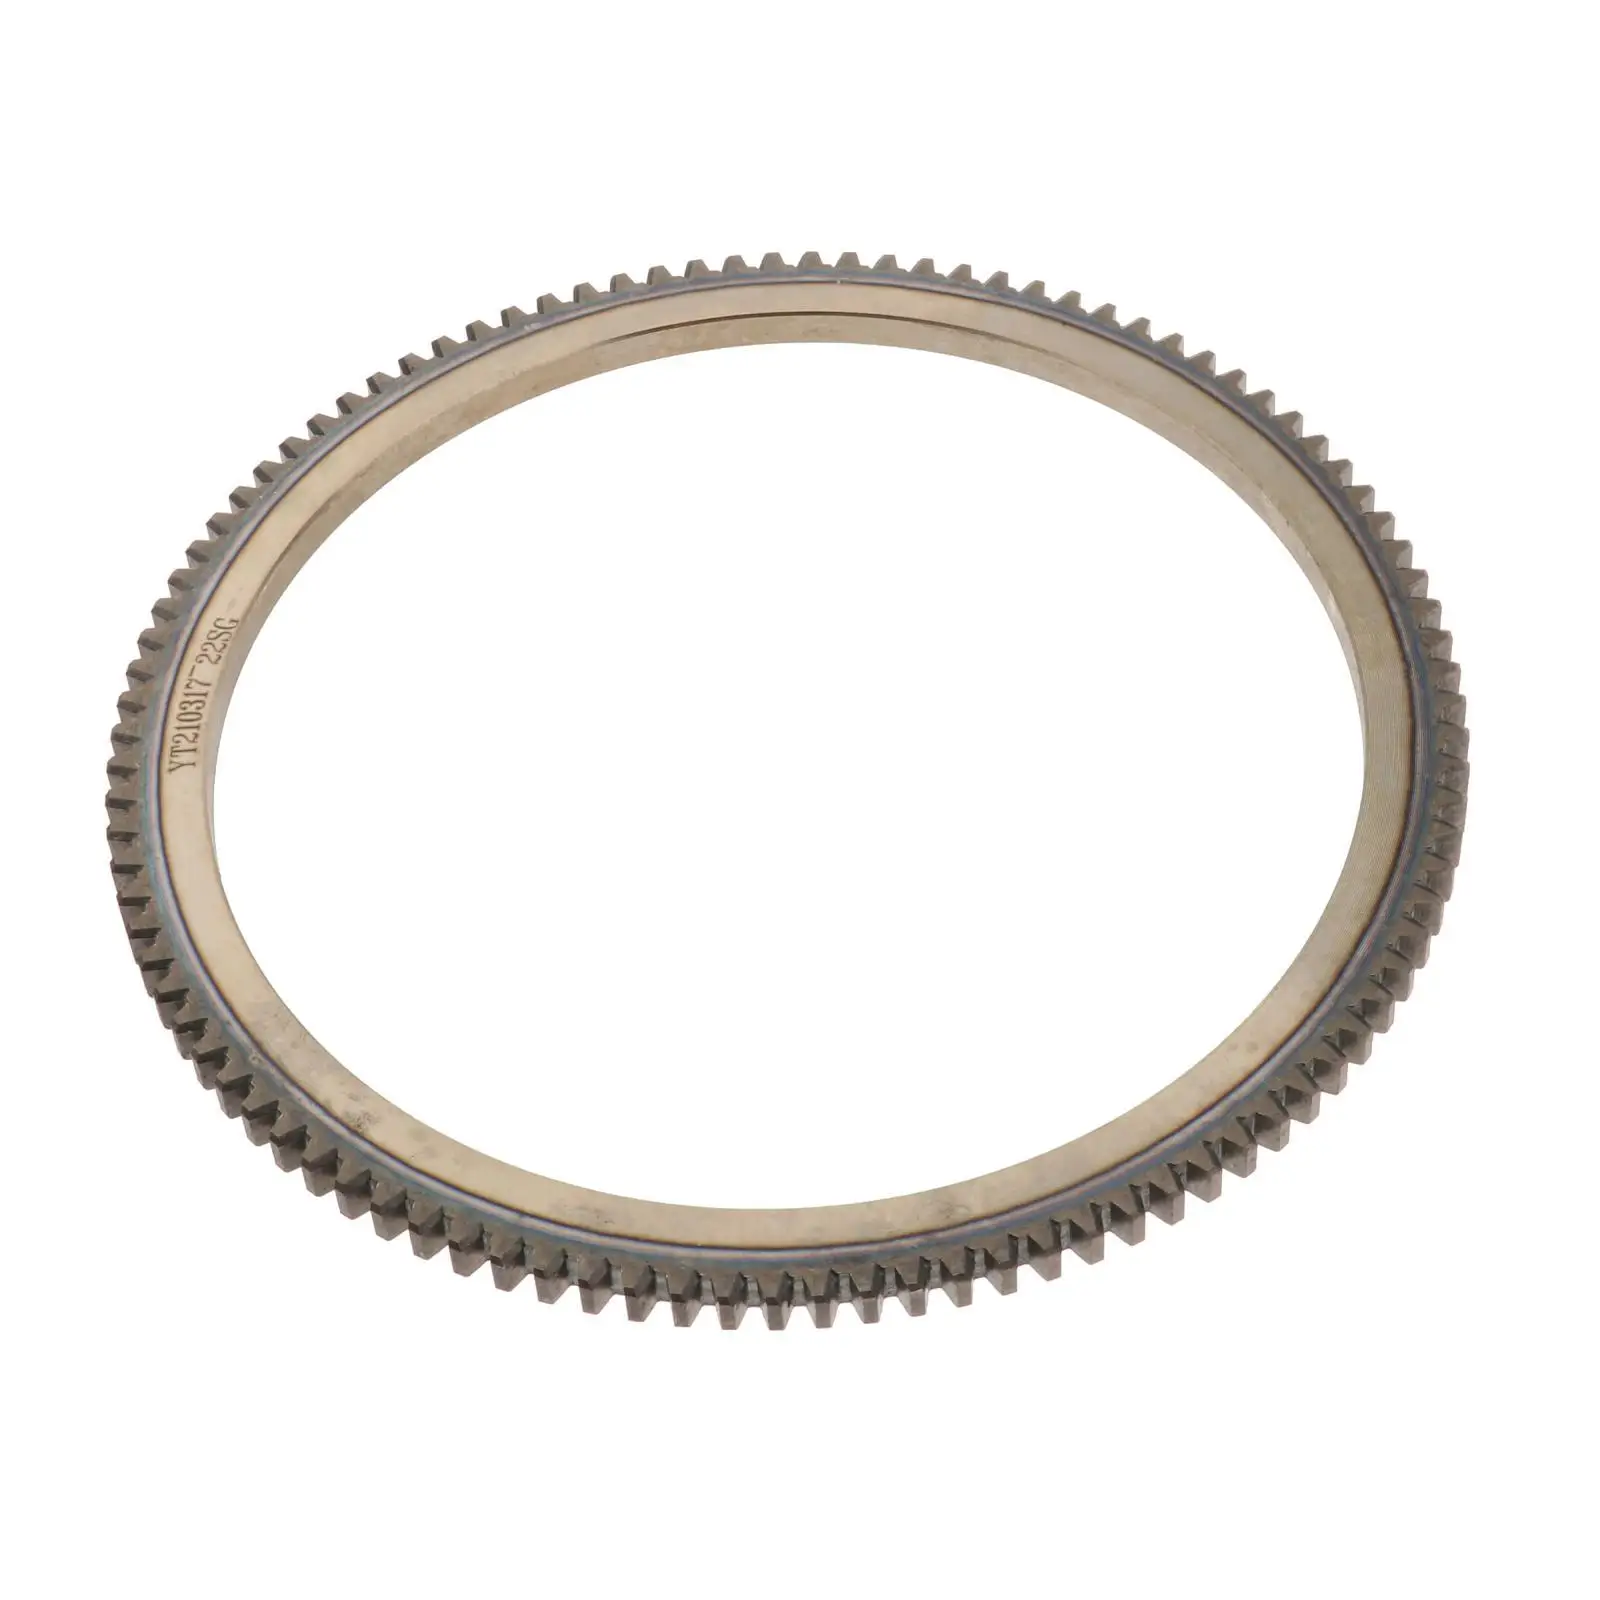 Зубчатые кольца из легированной стали для подвесного мотора Parsun 2T 9,8-18 л.с. - 1